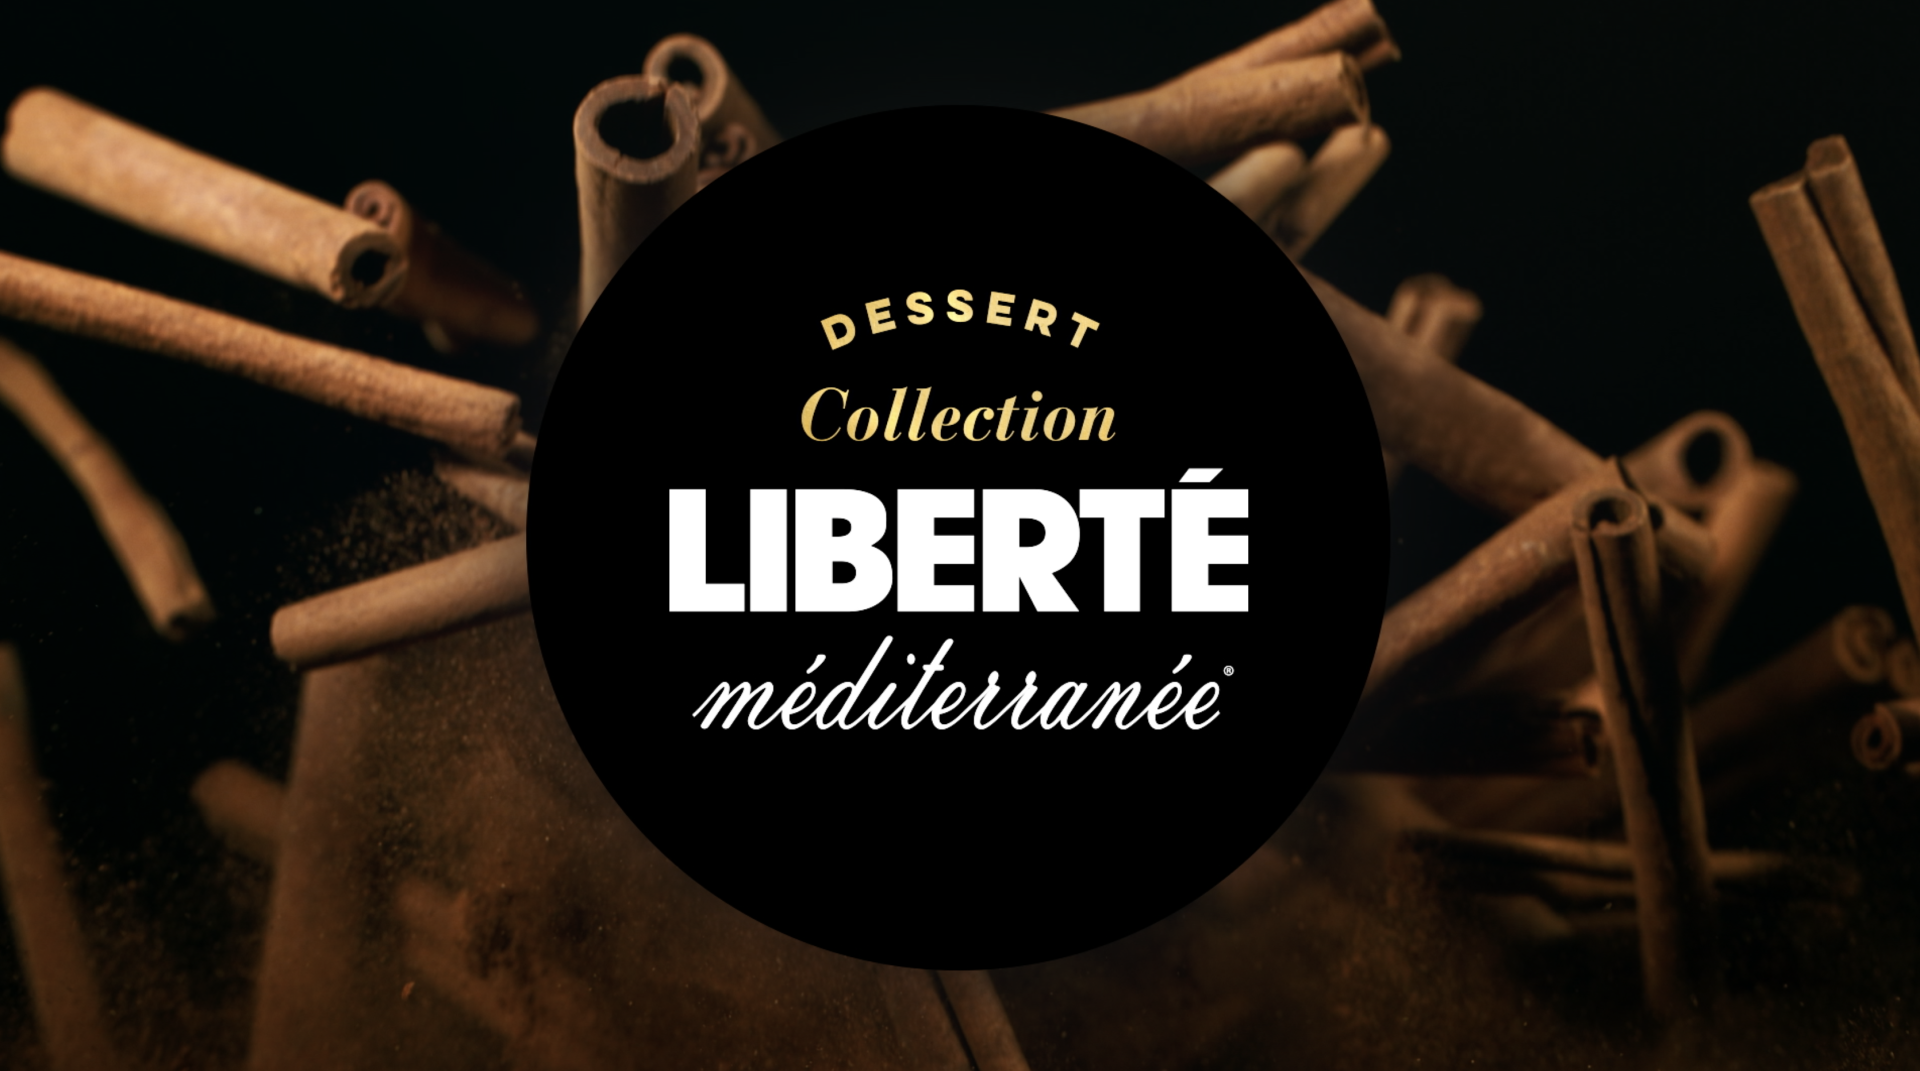 Project Liberté - Dessert Collection header